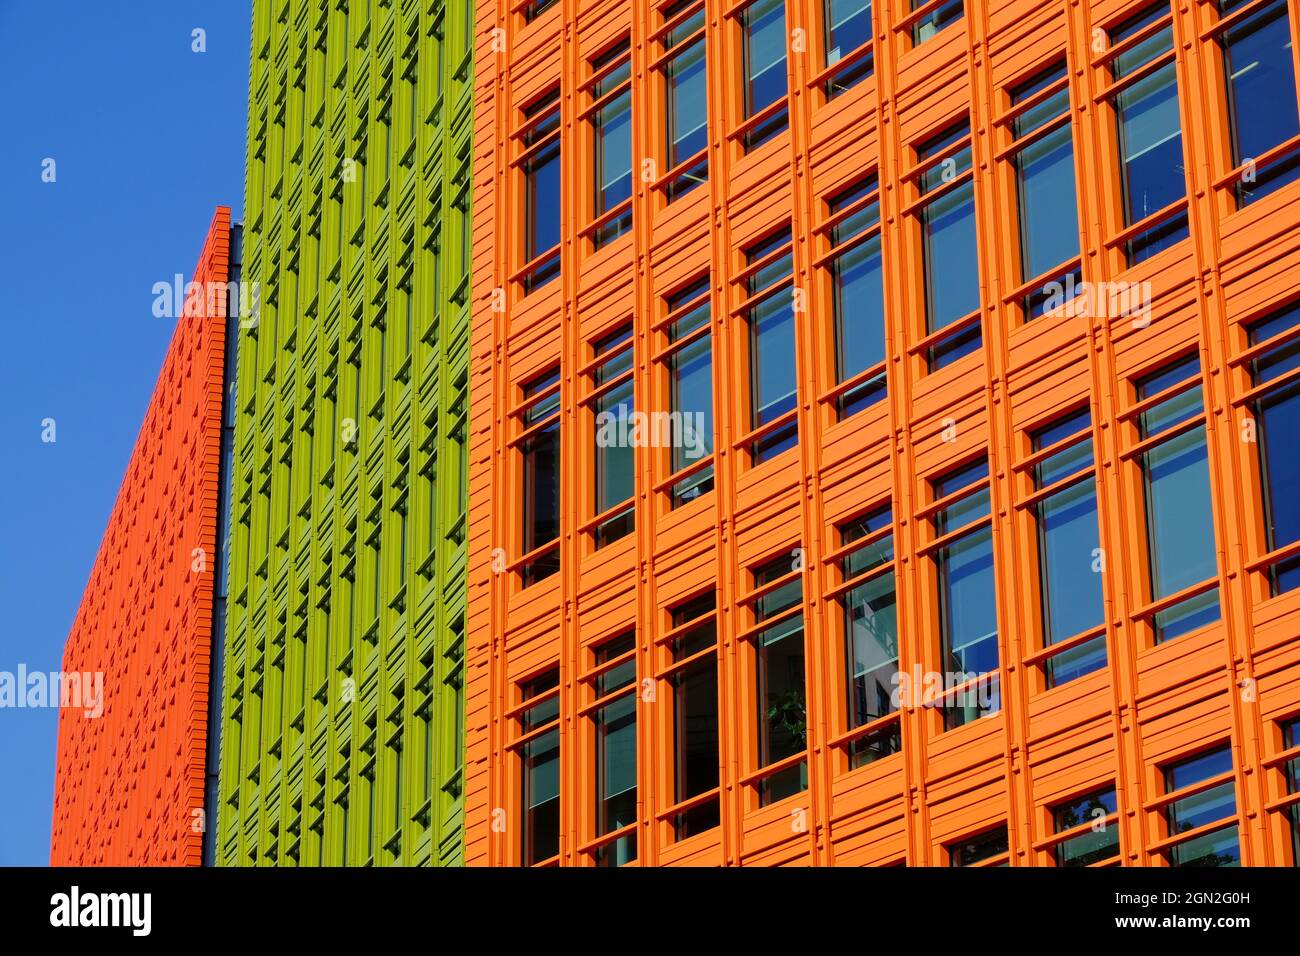 Bâtiments de Central St Giles aux couleurs vives conçus par Renzo Piano à Shaftesbury Ave et High Holborn à Londres, en Angleterre Banque D'Images